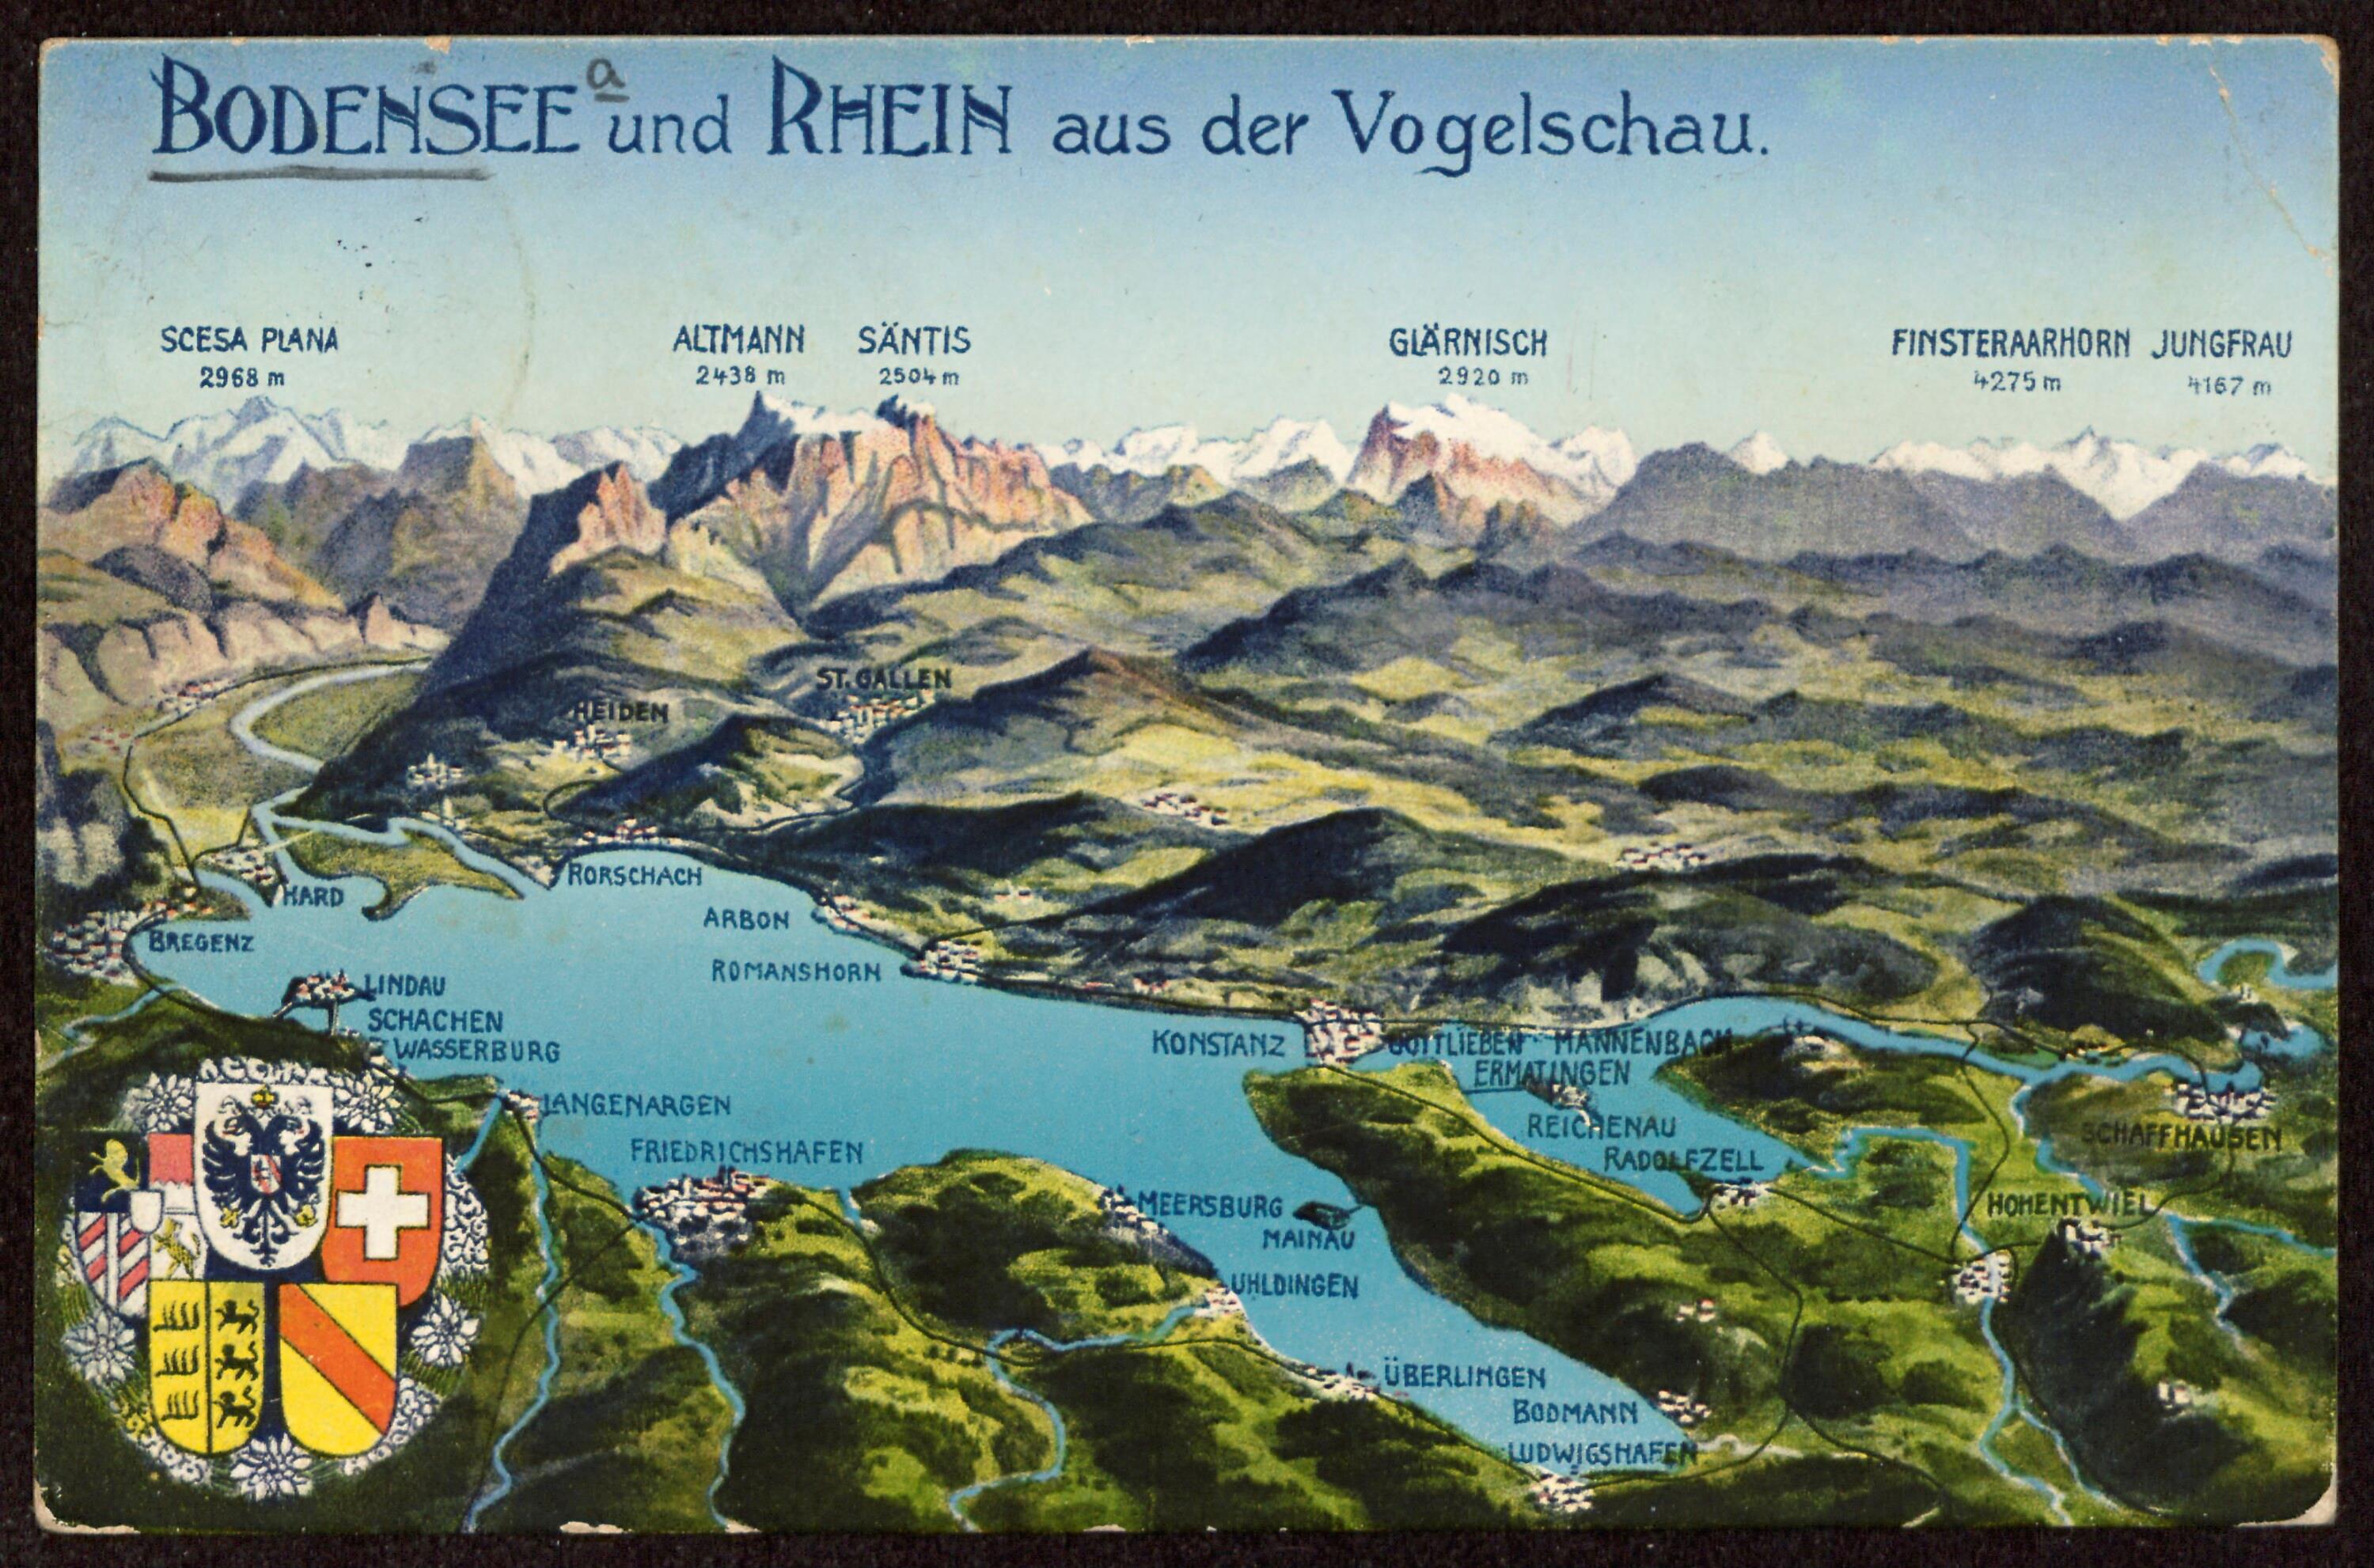 Bodensee und Rhein aus der Vogelschau></div>


    <hr>
    <div class=